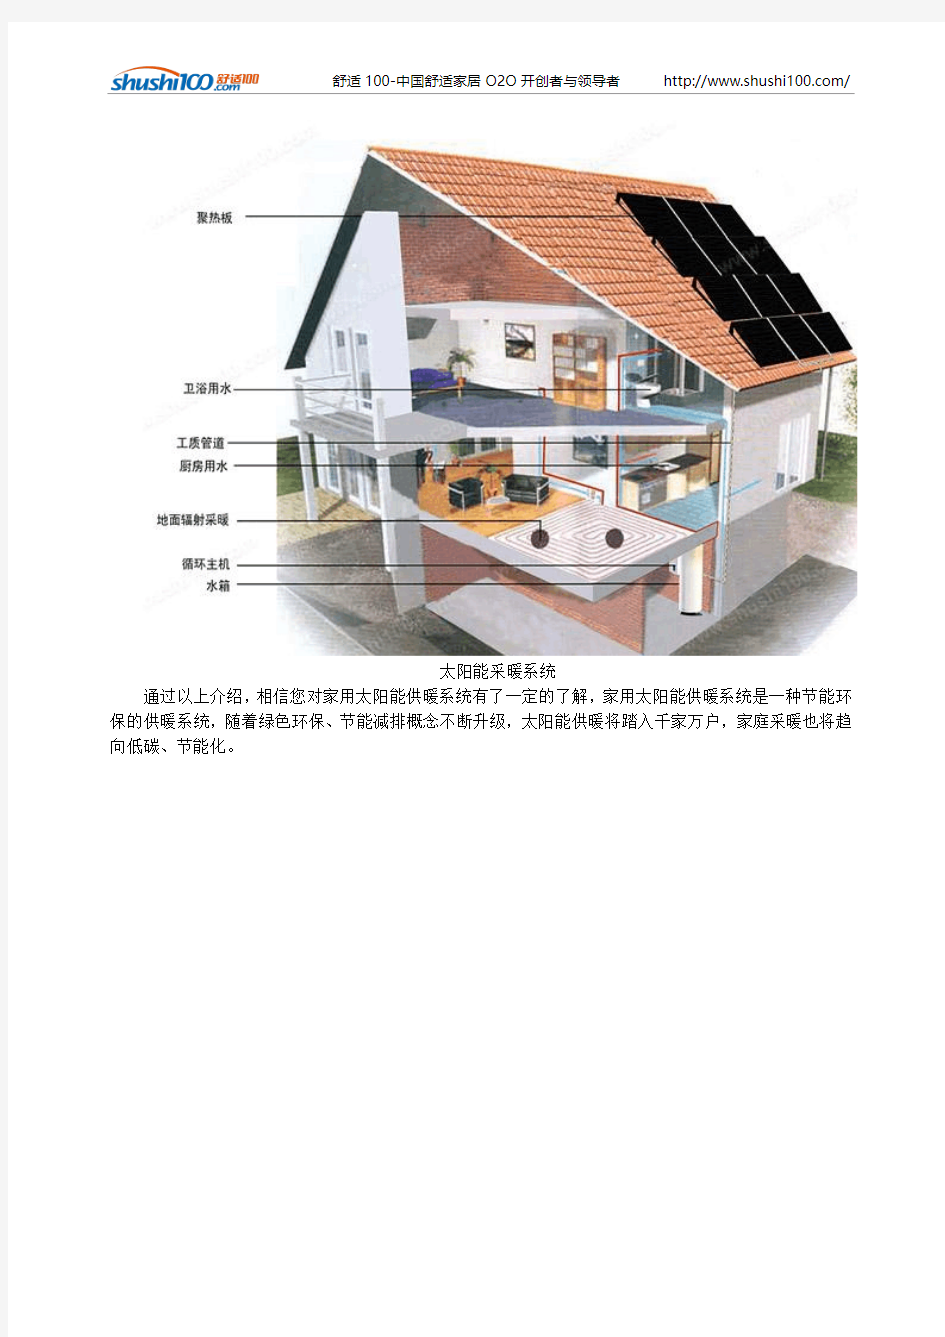 家用太阳能供暖系统-家用太阳能供暖系统详细介绍